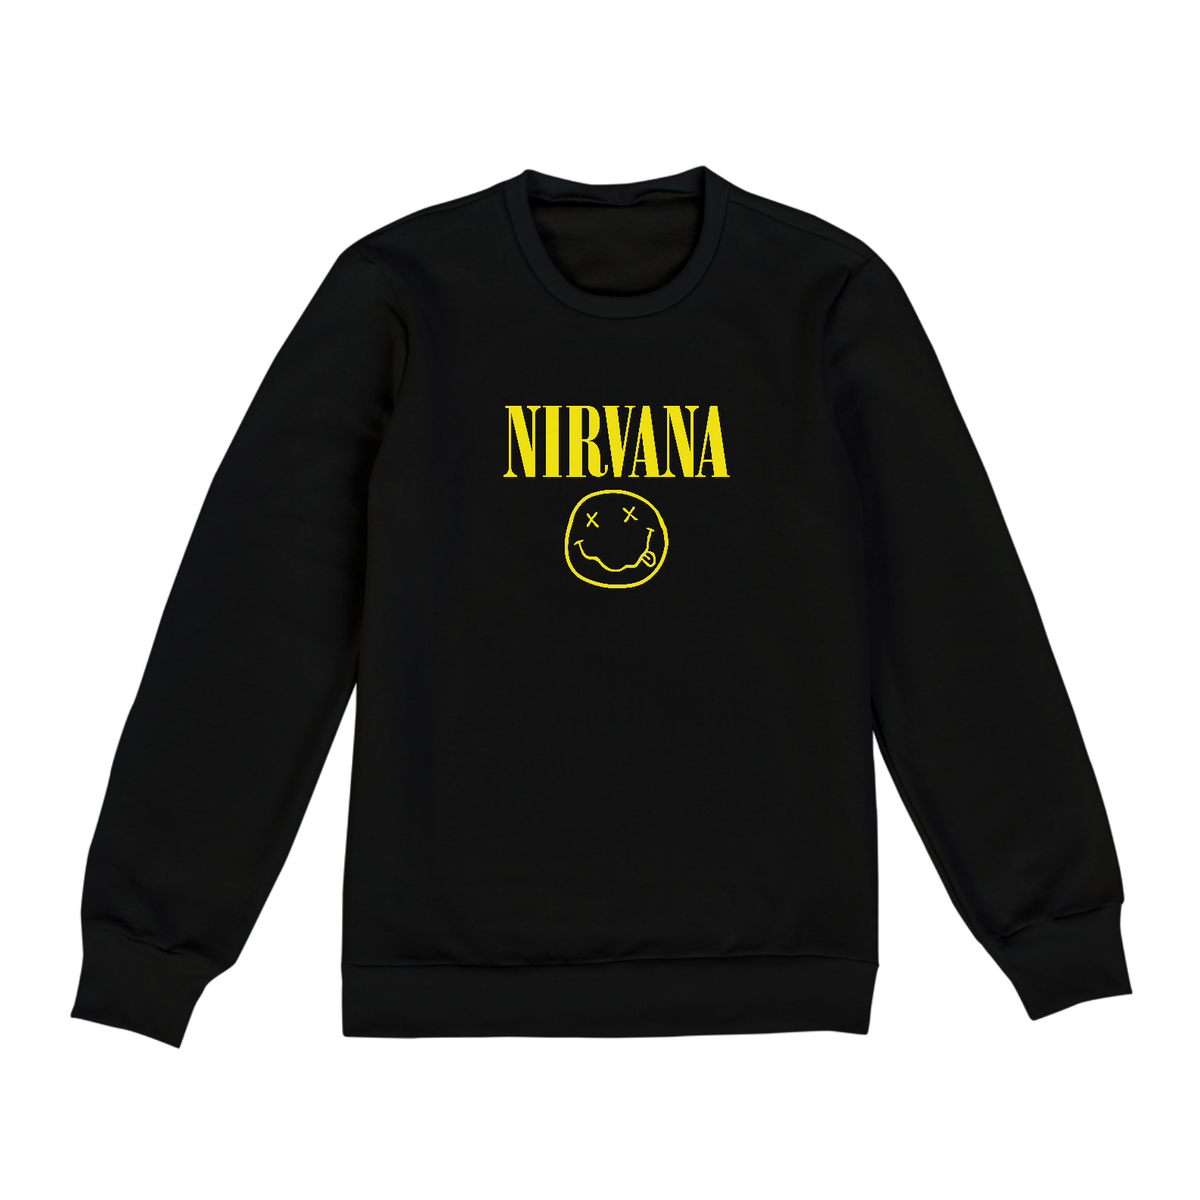 Nome do produto: Moletom Unissex Nirvana Smile